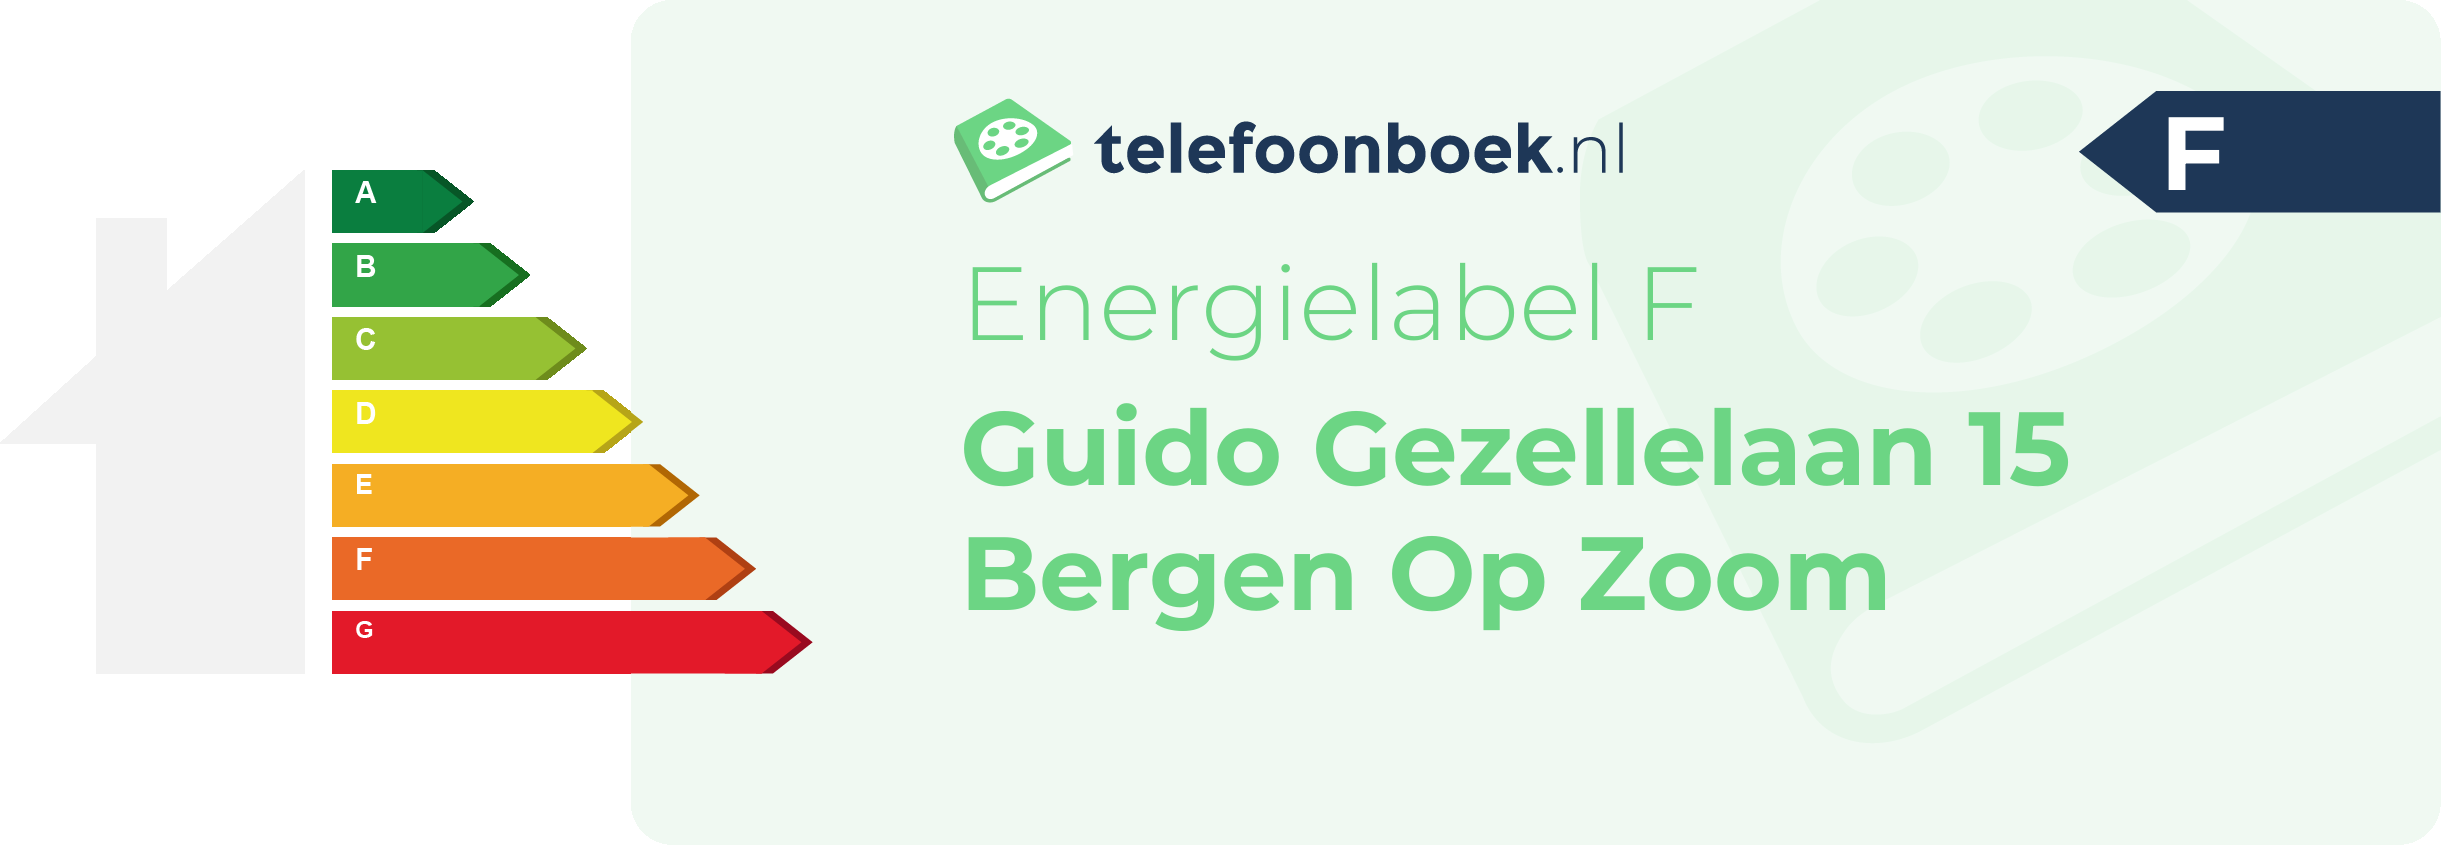 Energielabel Guido Gezellelaan 15 Bergen Op Zoom